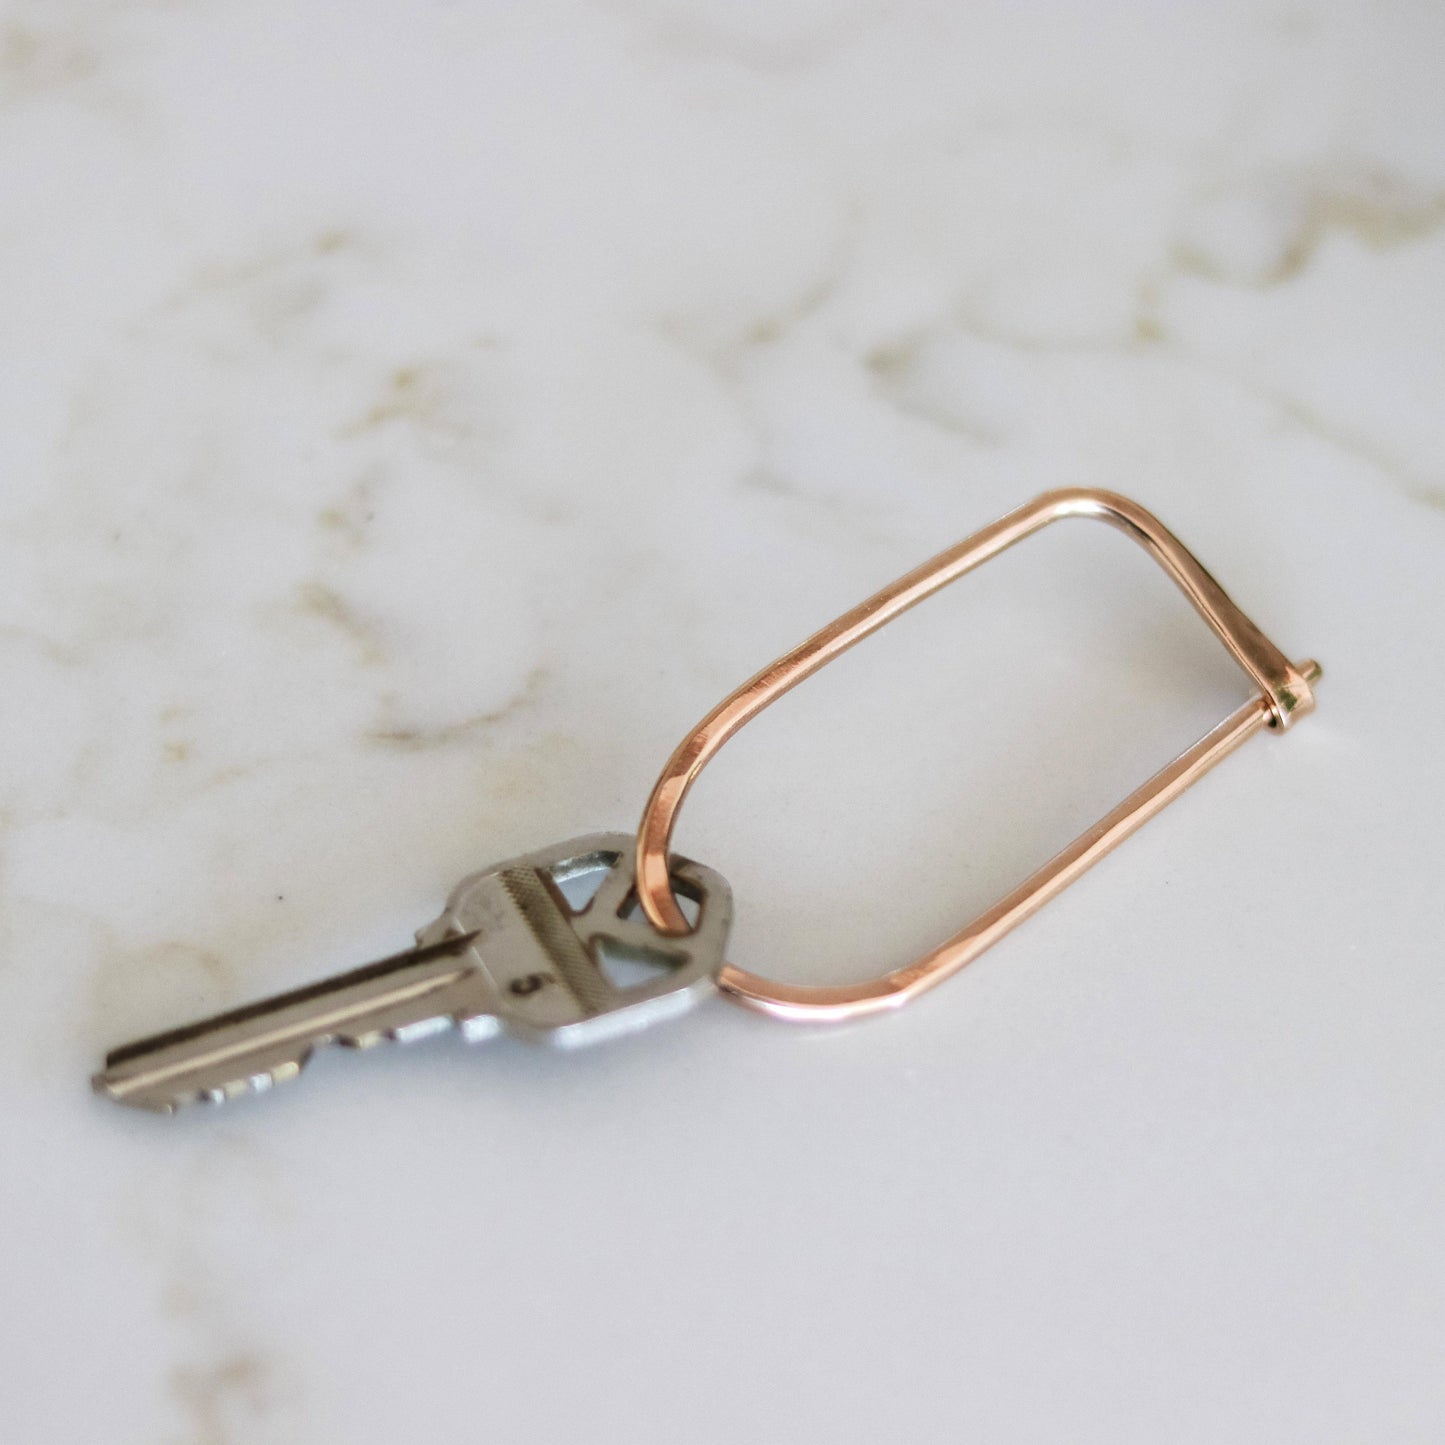 Bronze key clip with key